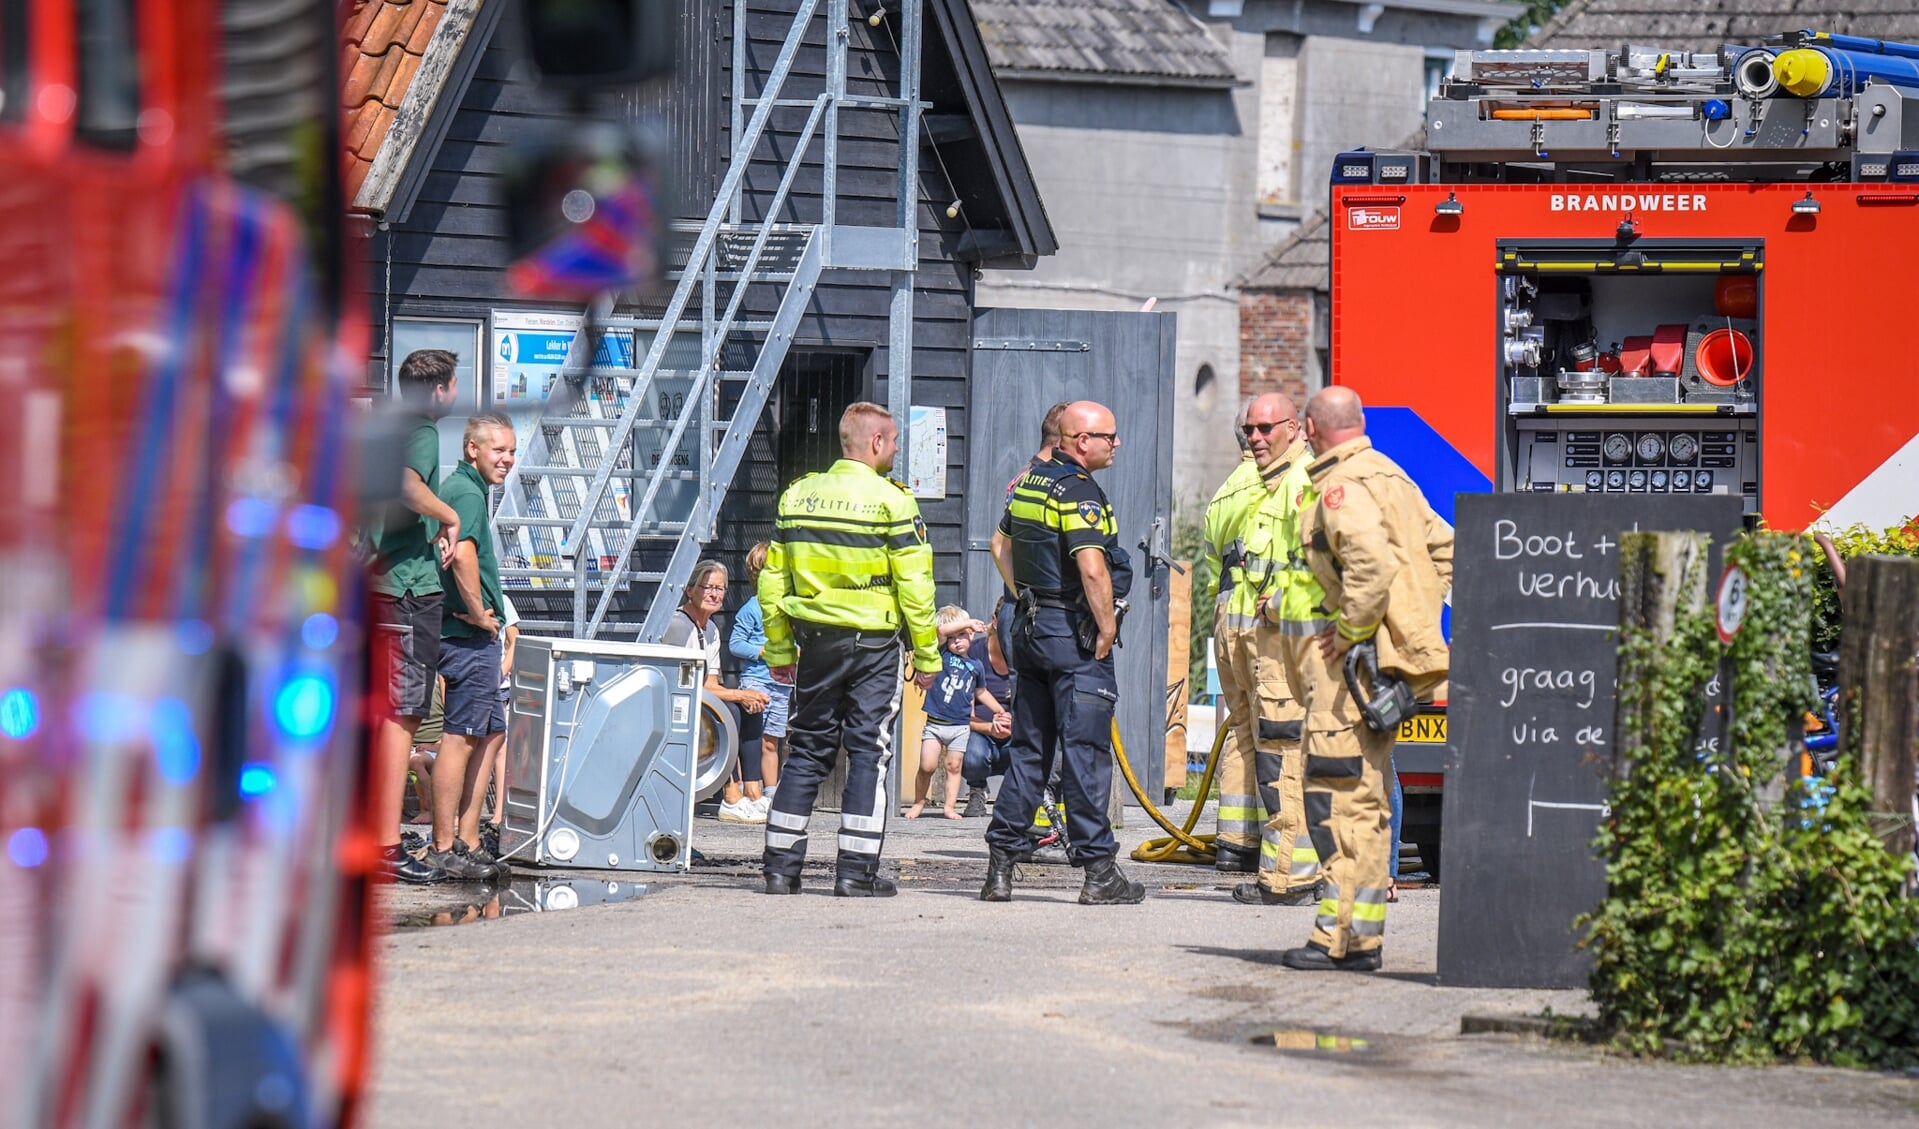 Brandweer, politie en medewerkers van het recreatiebedrijf bij de gewraakte wasdroger. Foto: Ingmar Vos. 